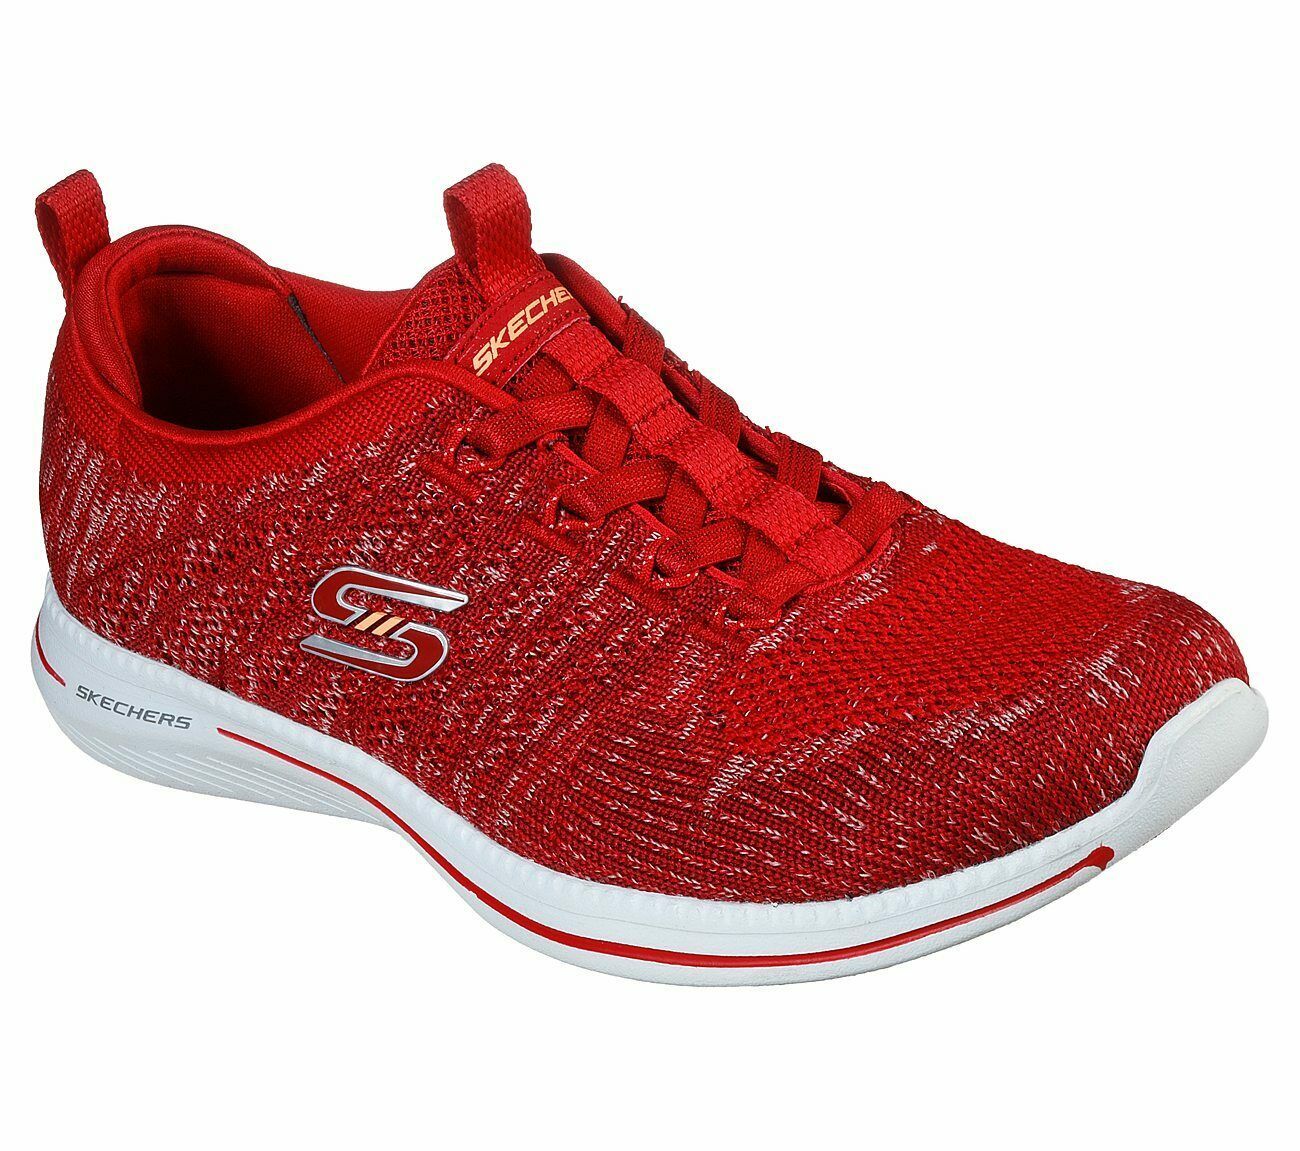 Skechers Red Shoes Memory Foam Women Slipon Comfort Casual Sporty ...